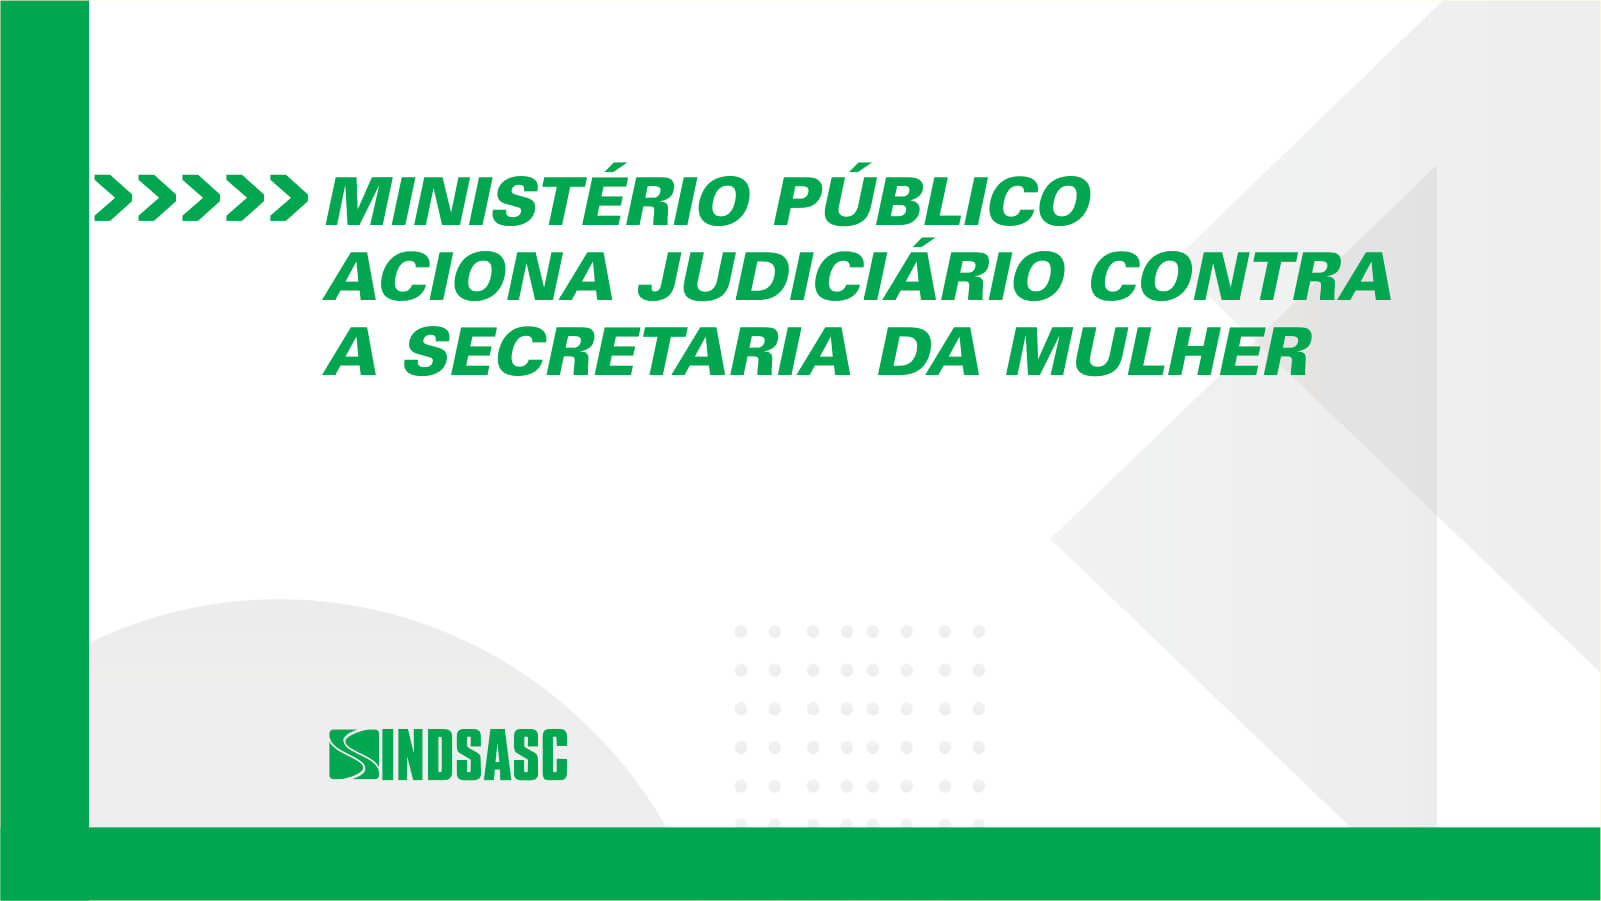 MINISTÉRIO PÚBLICO ACIONA JUDICIÁRIO CONTRA A SECRETARIA DA MULHER